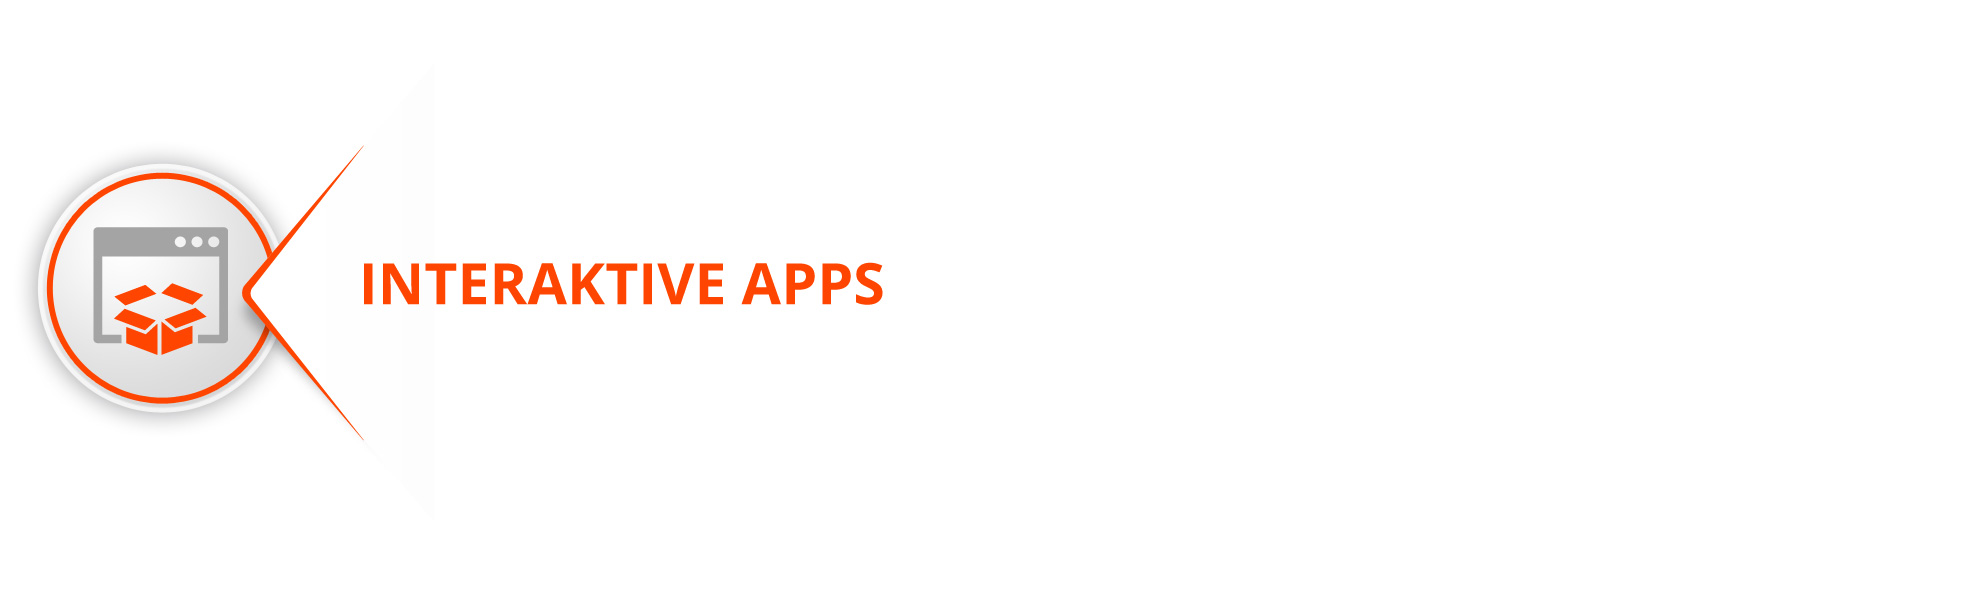 interaktive-apps-azobit